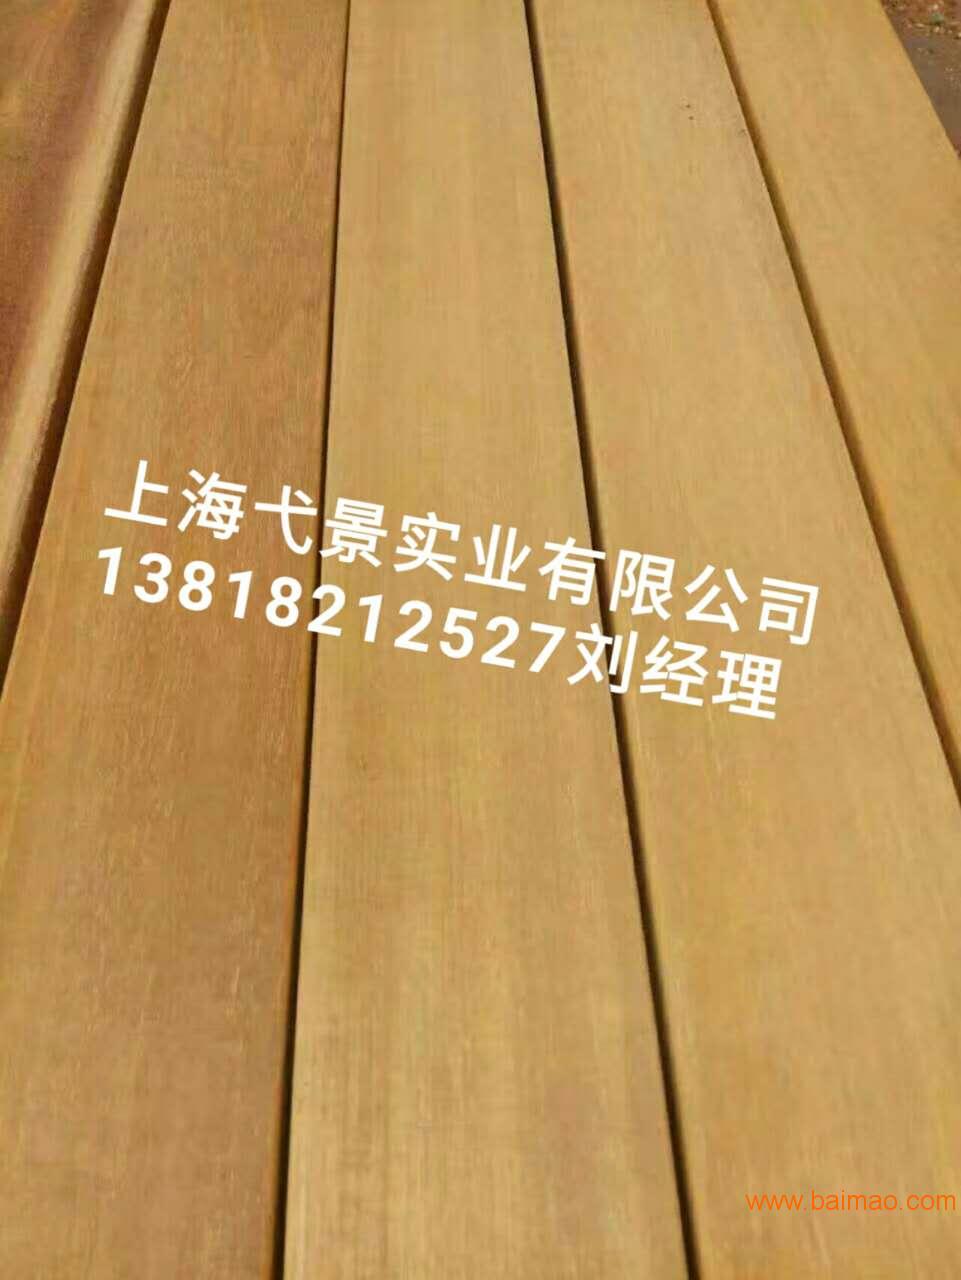 上海弋景户外菠萝格板材销售 印尼菠萝格板材实木门